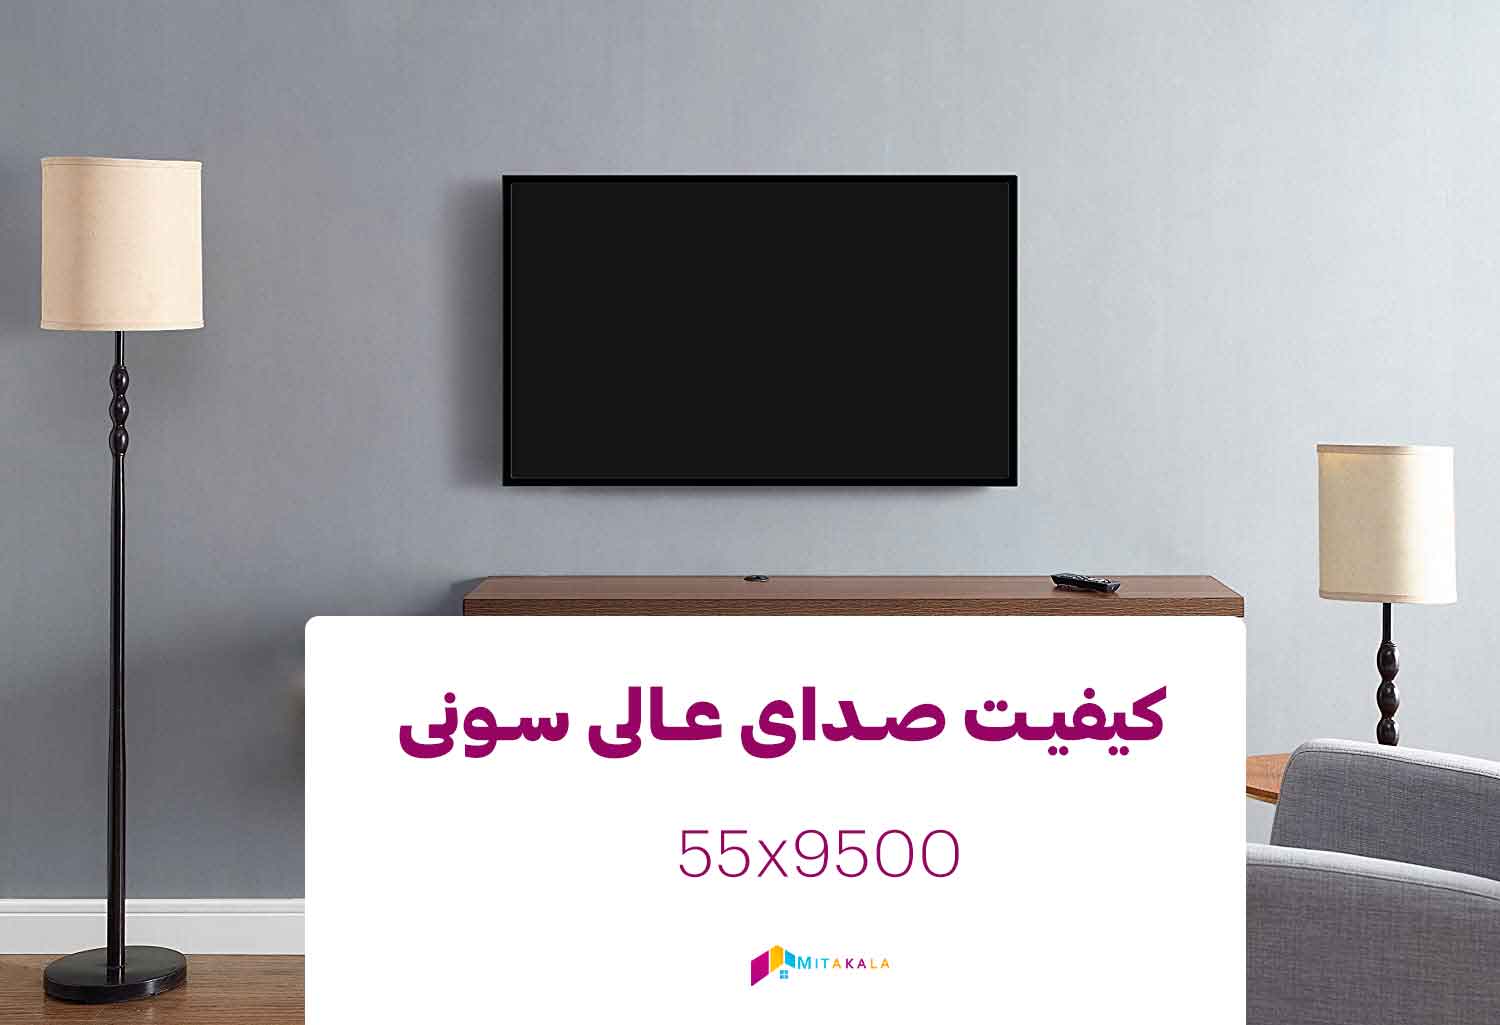 تلویزیون سونی 55x9500h